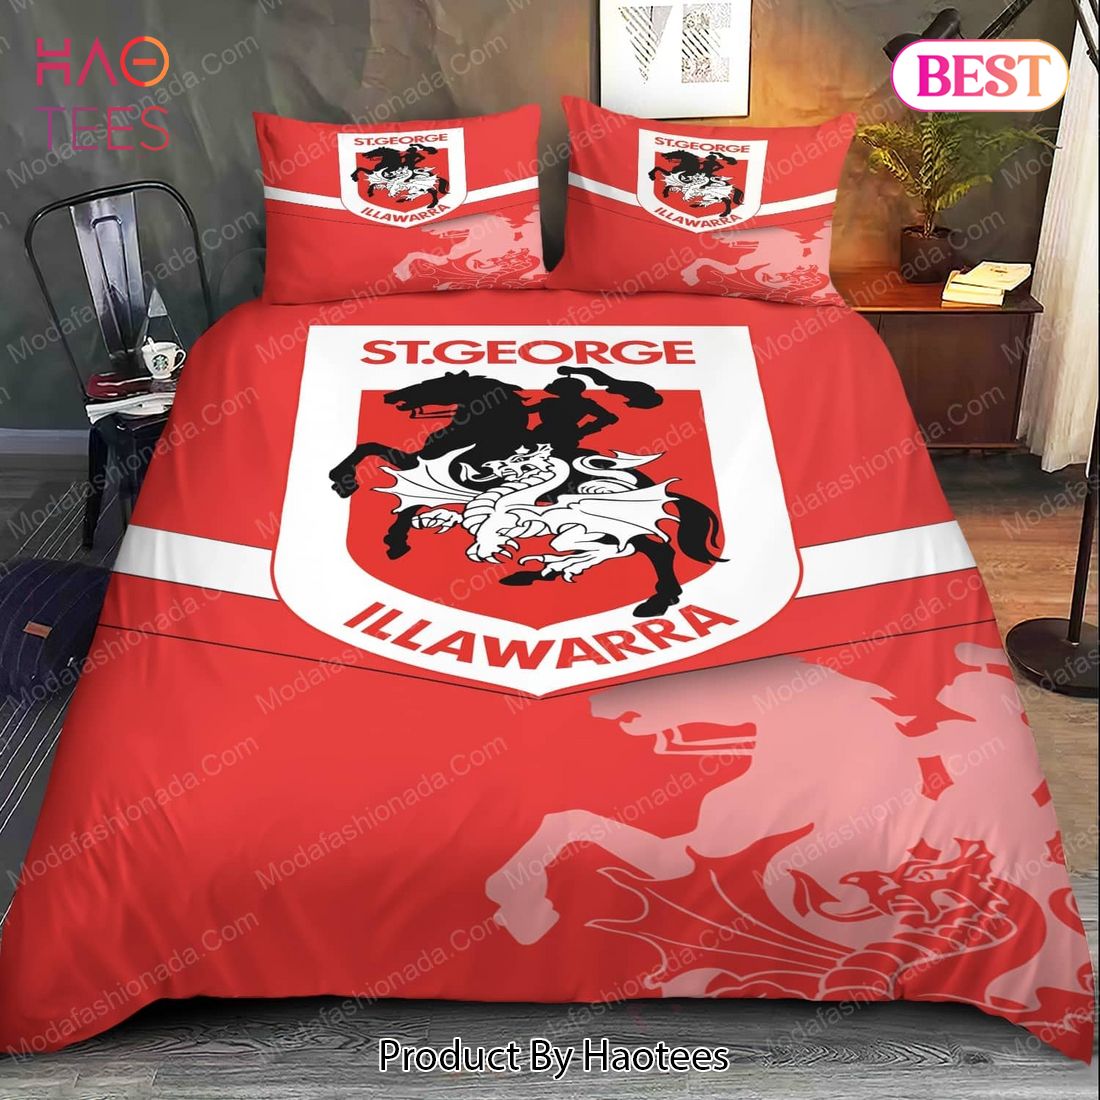 St. George Illawarra Dragons Logo Bedding Sets Bed Sets, Bedroom Sets, Comforter Sets, Duvet Cover, Bedspread